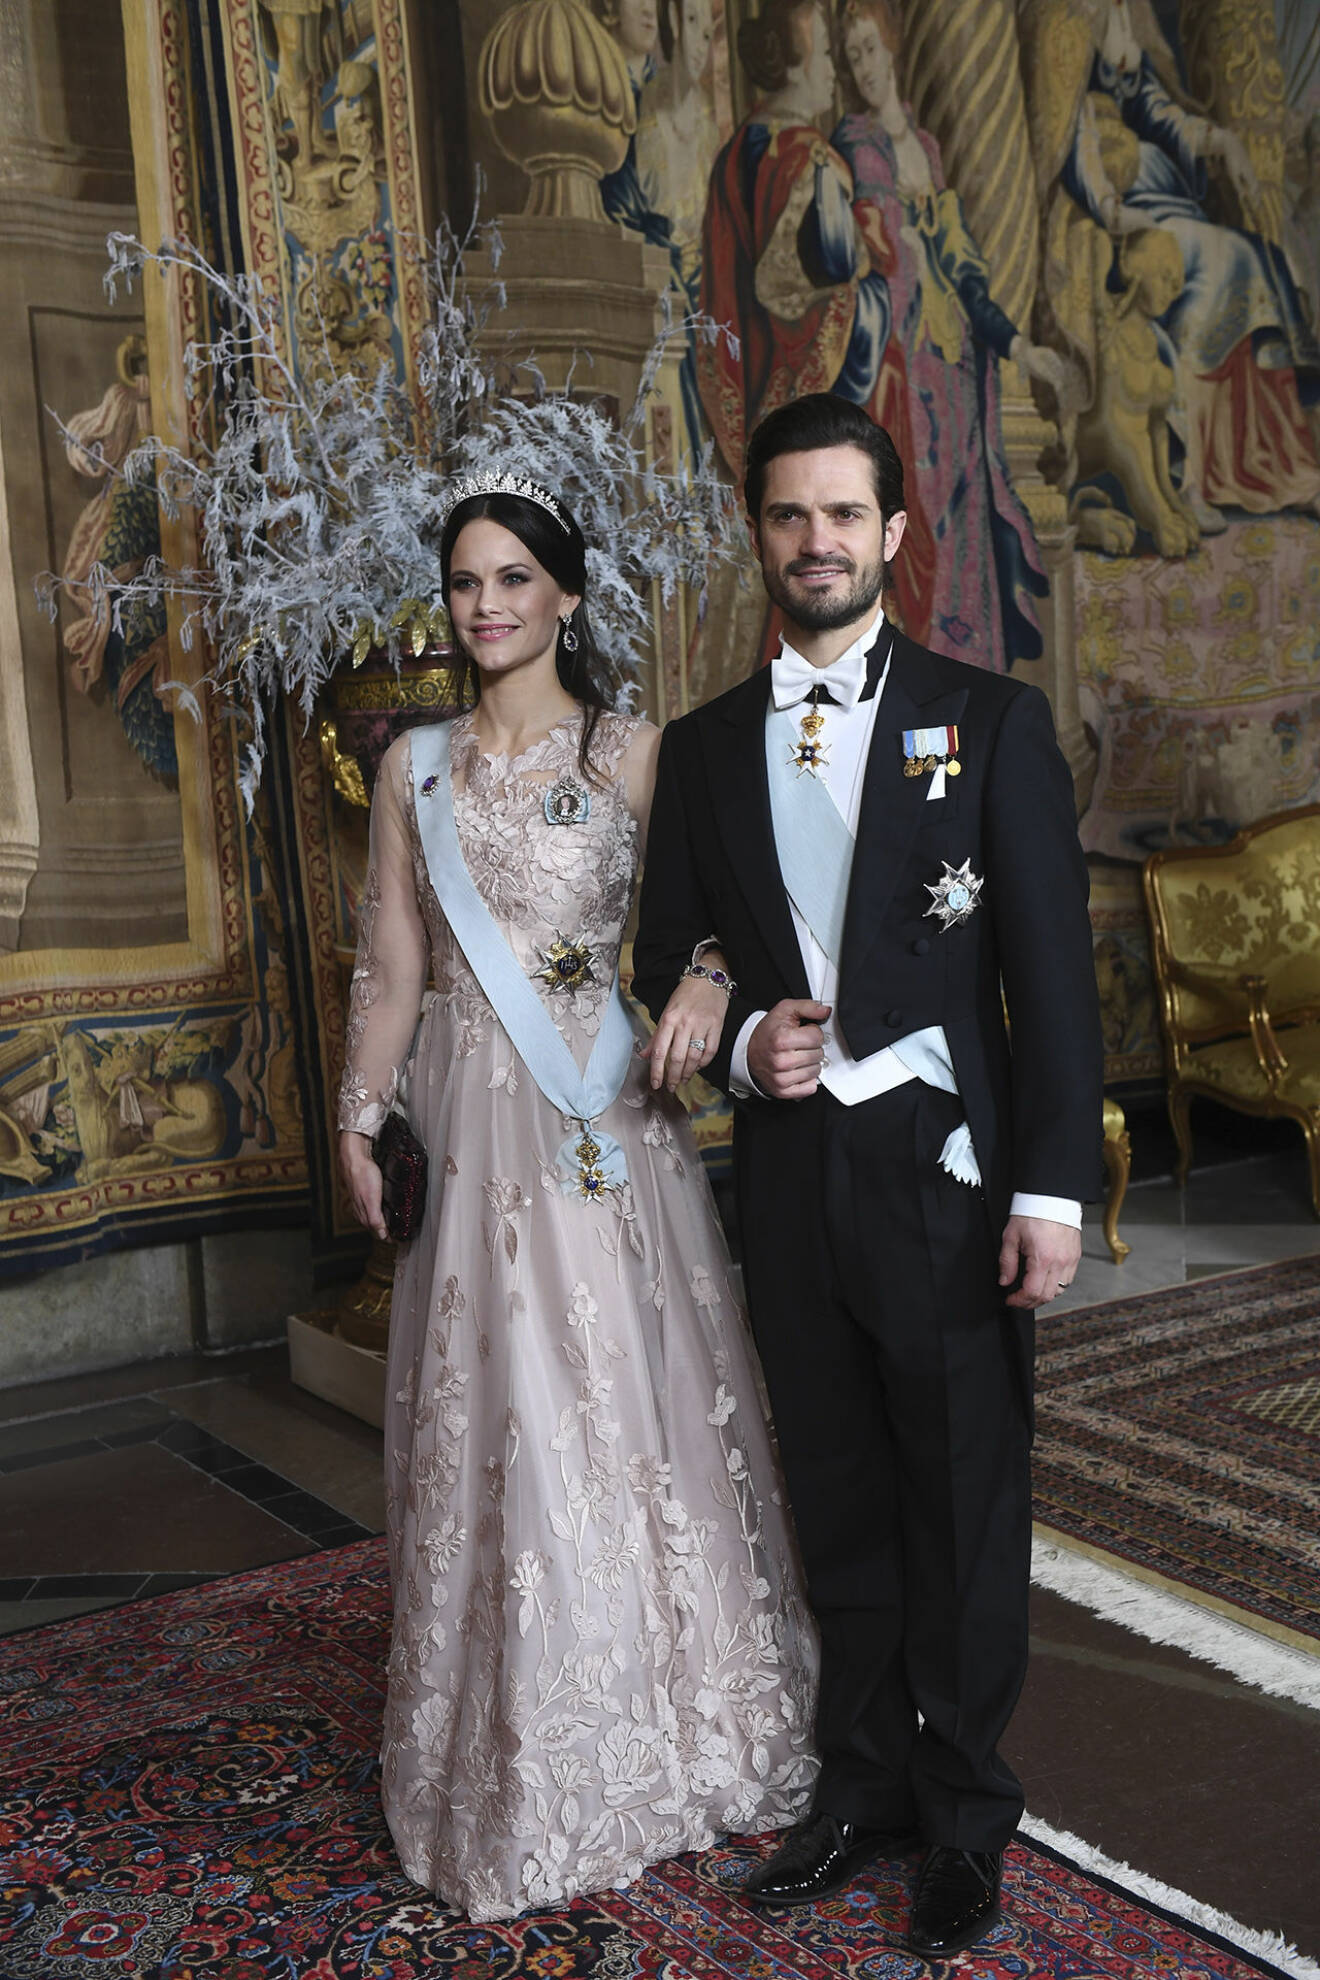 På nobelmiddagen 2018 såg prinsessan Sofia och prins Carl Philip, som alltid, helt fantastiska ut. 